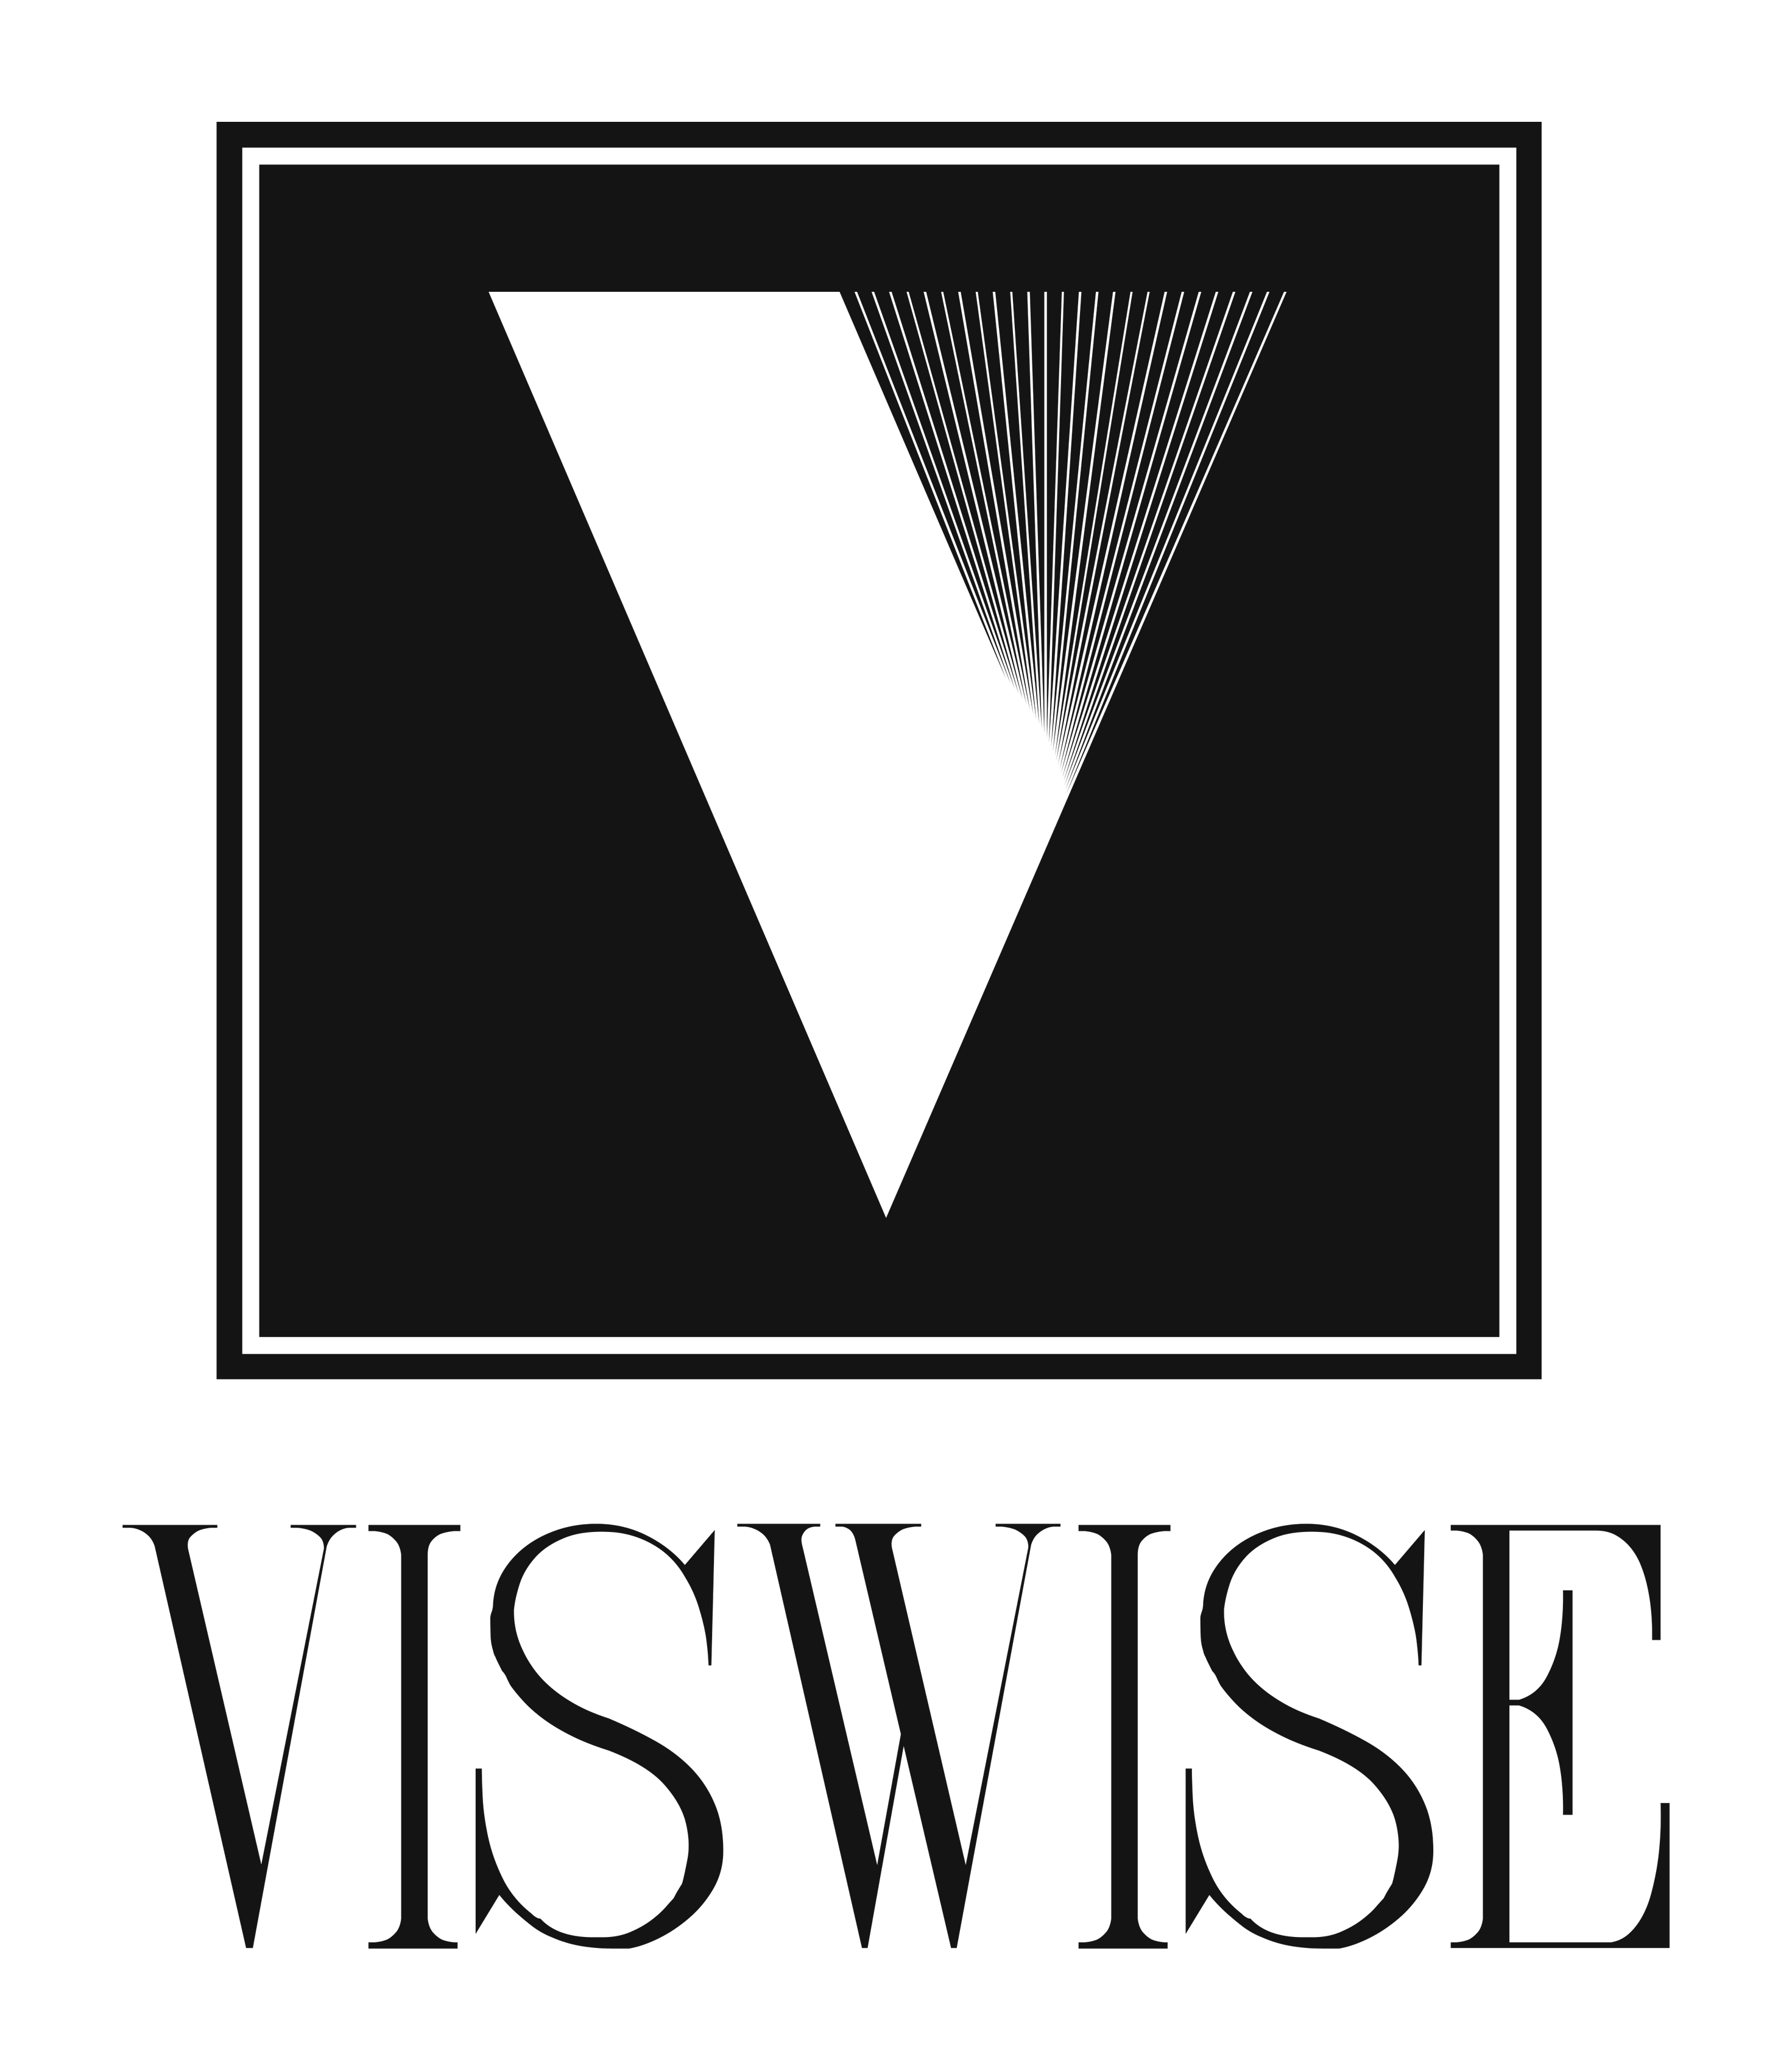 Viswise